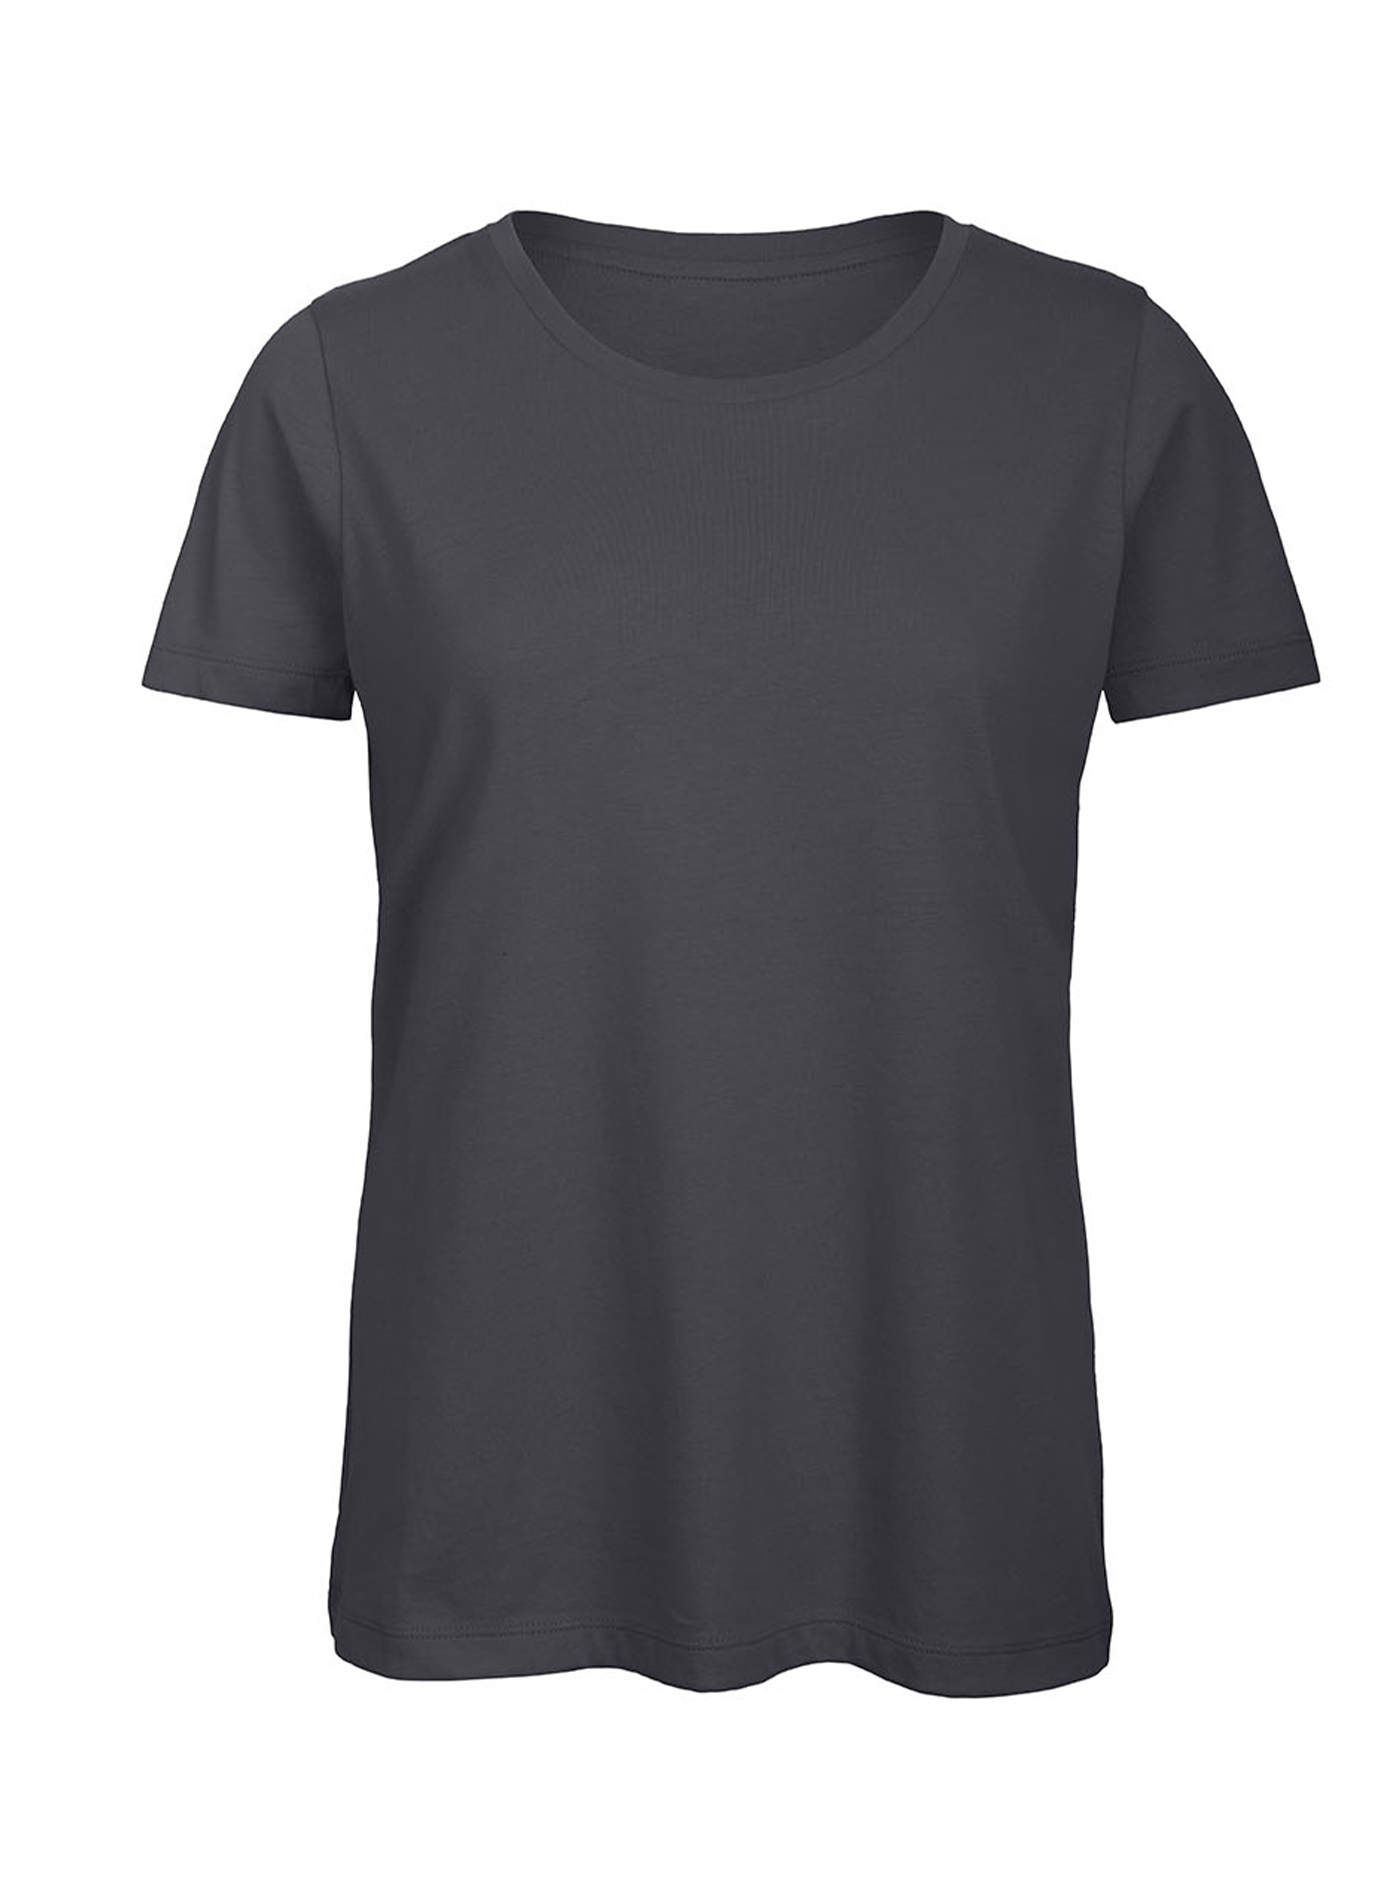 Dámské tričko B&C Collection Inspire - Tmavě šedá L